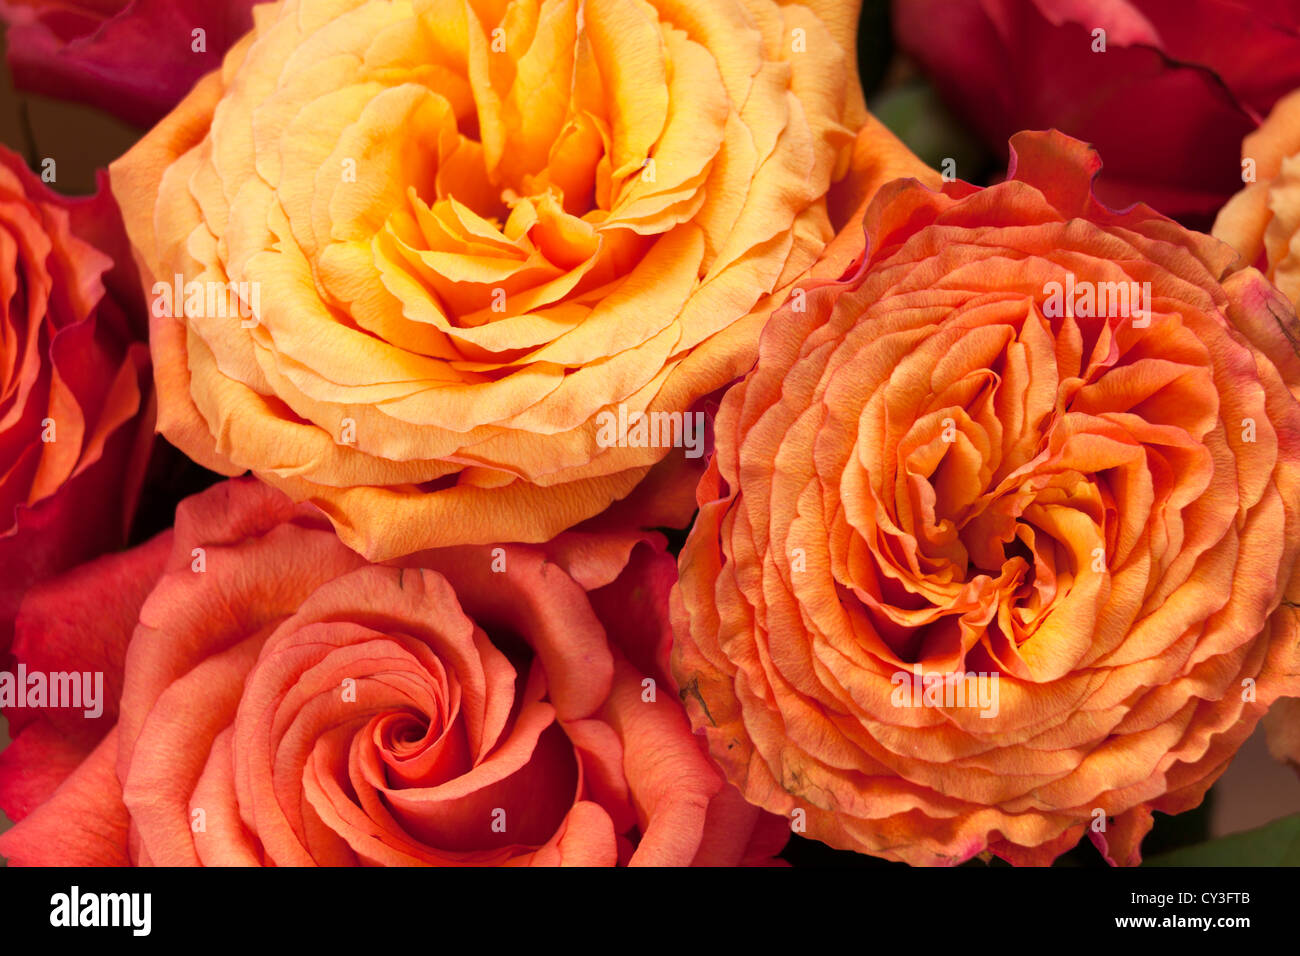 Vicino la testa sulla vista di rosa / arancio / giallo hybrid tea rose Foto Stock